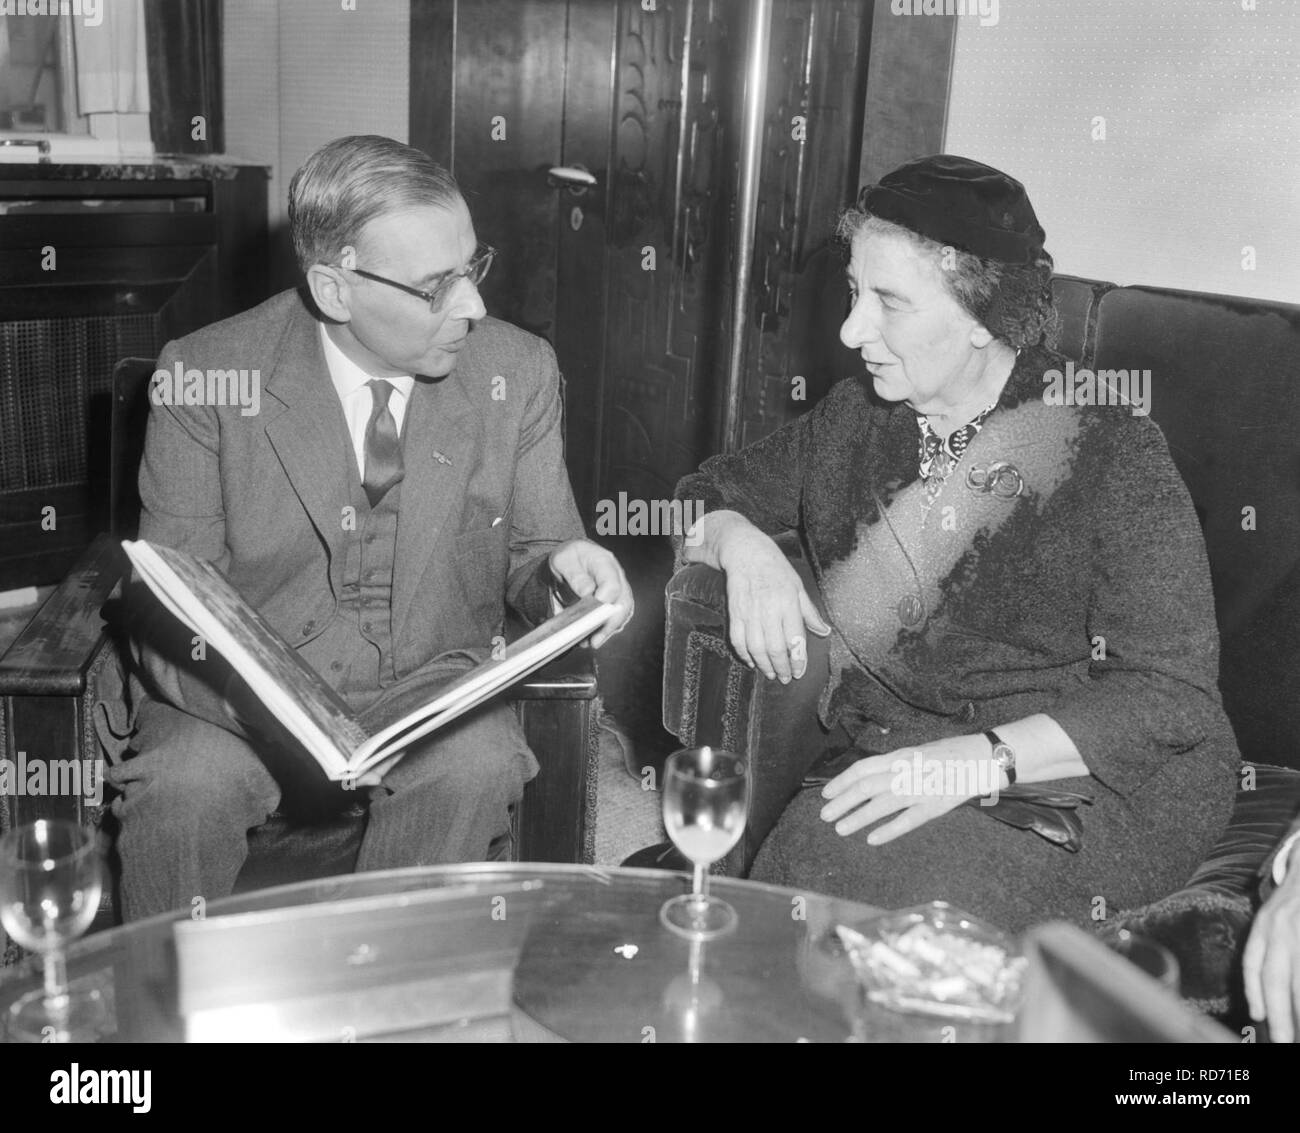 Amsterdam. Minister van Buitenlandse Zaken van Israel Golda Meir ontvangen op he, Bestanddeelnr 916-1014. Stock Photo